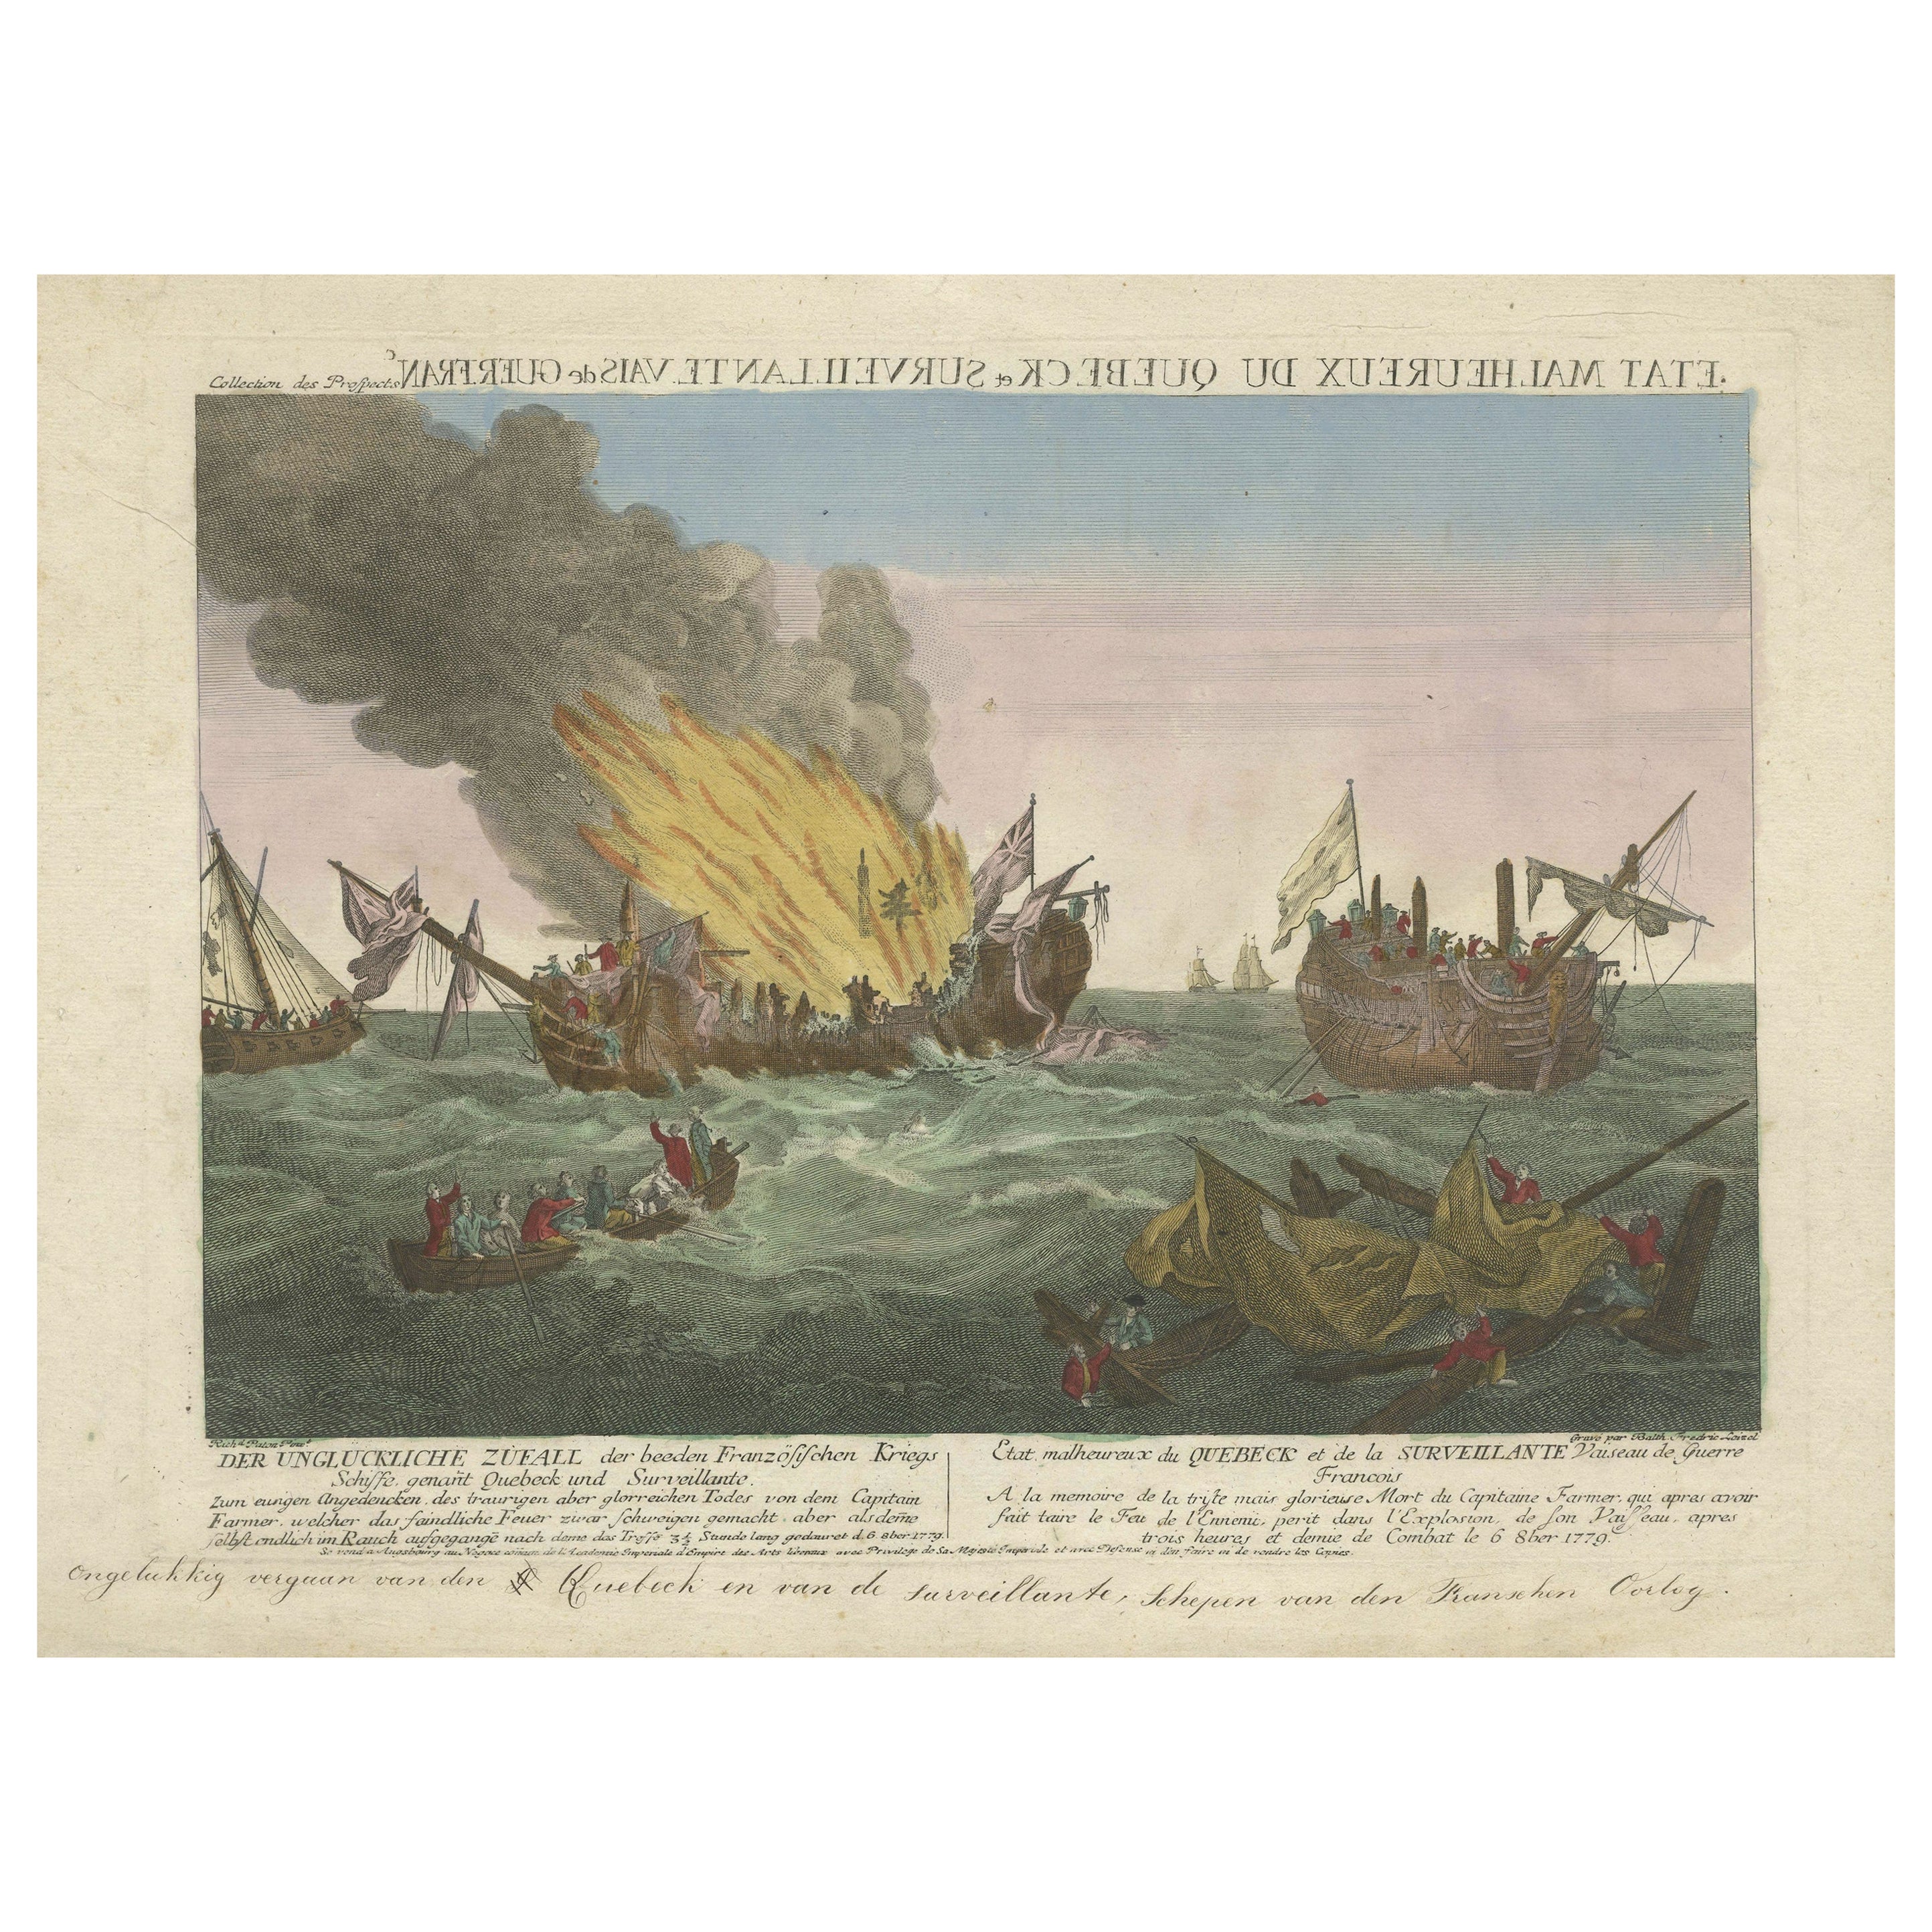 Seltene Gravur einer berühmten Schlacht in der Nähe von Ushant zwischen französischen und britischen